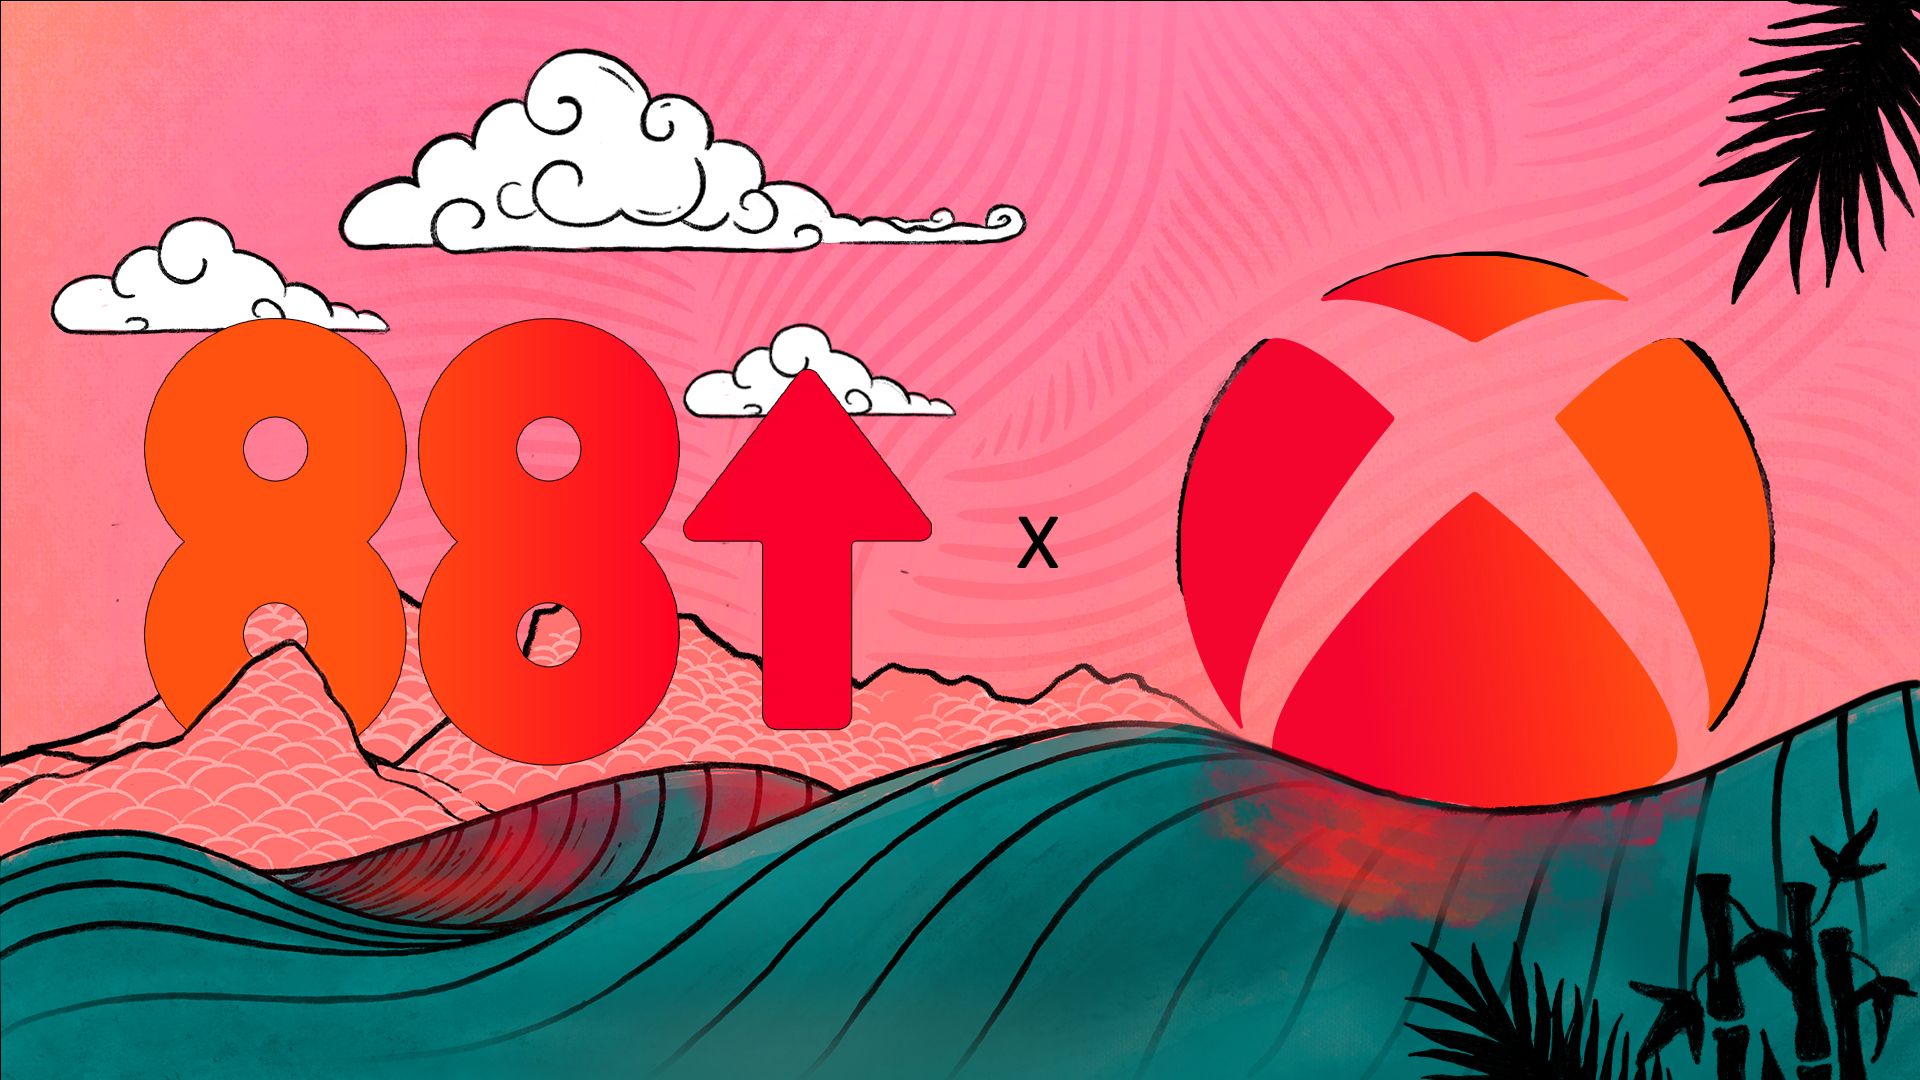 Xbox & 88rising Key Art